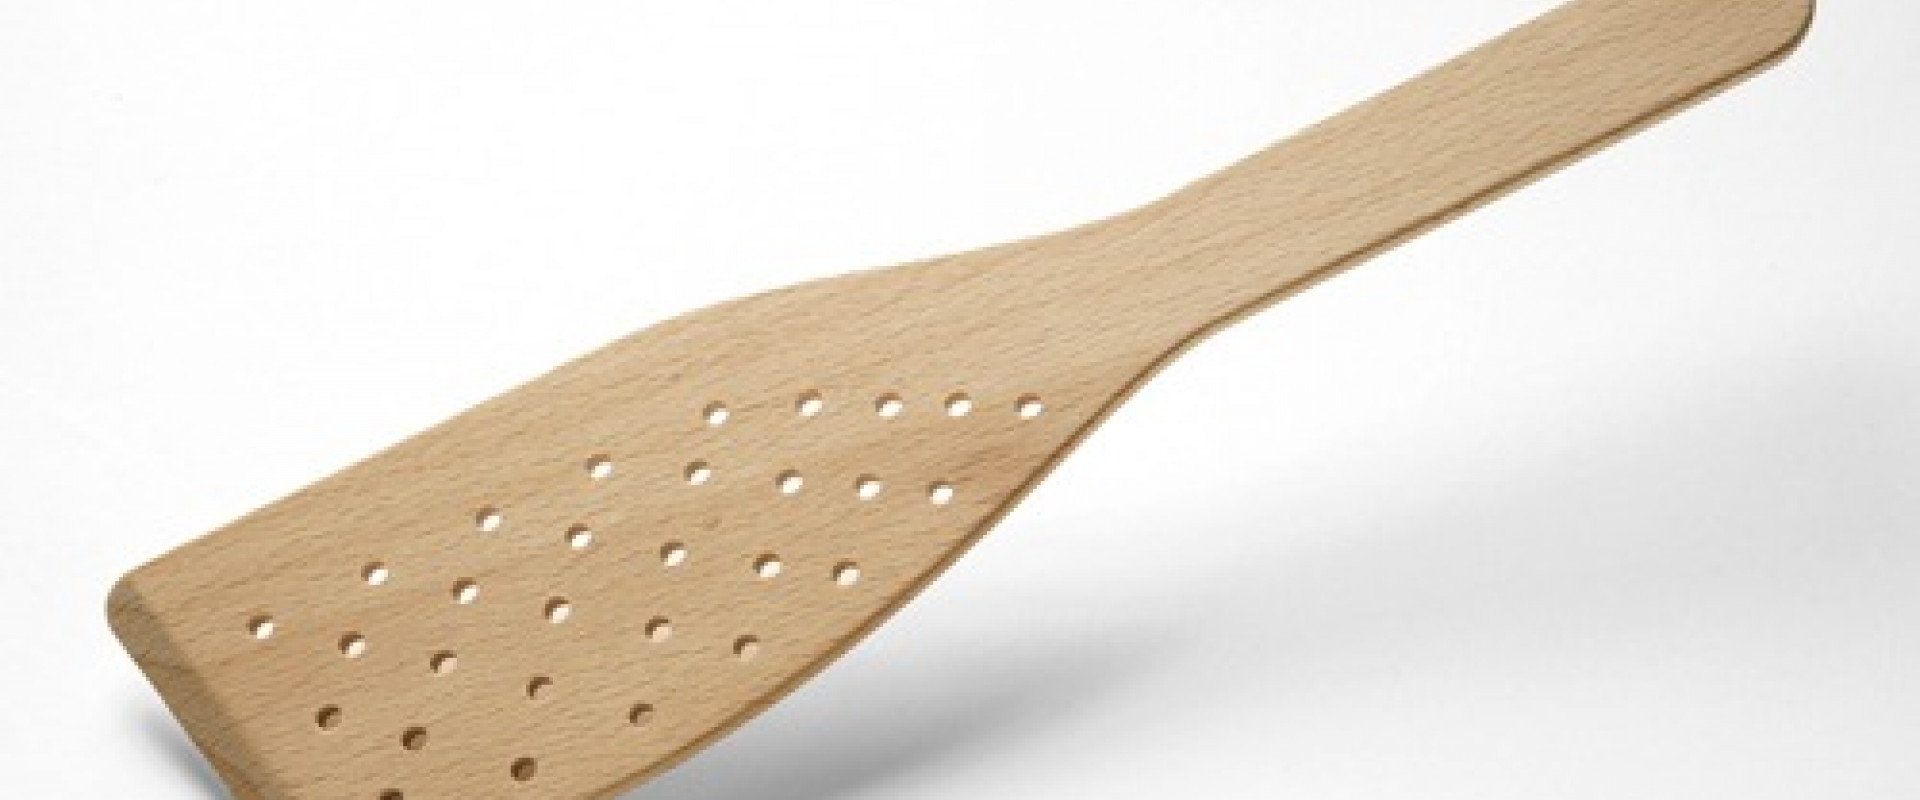 stir & strain Kochlöffel spatula